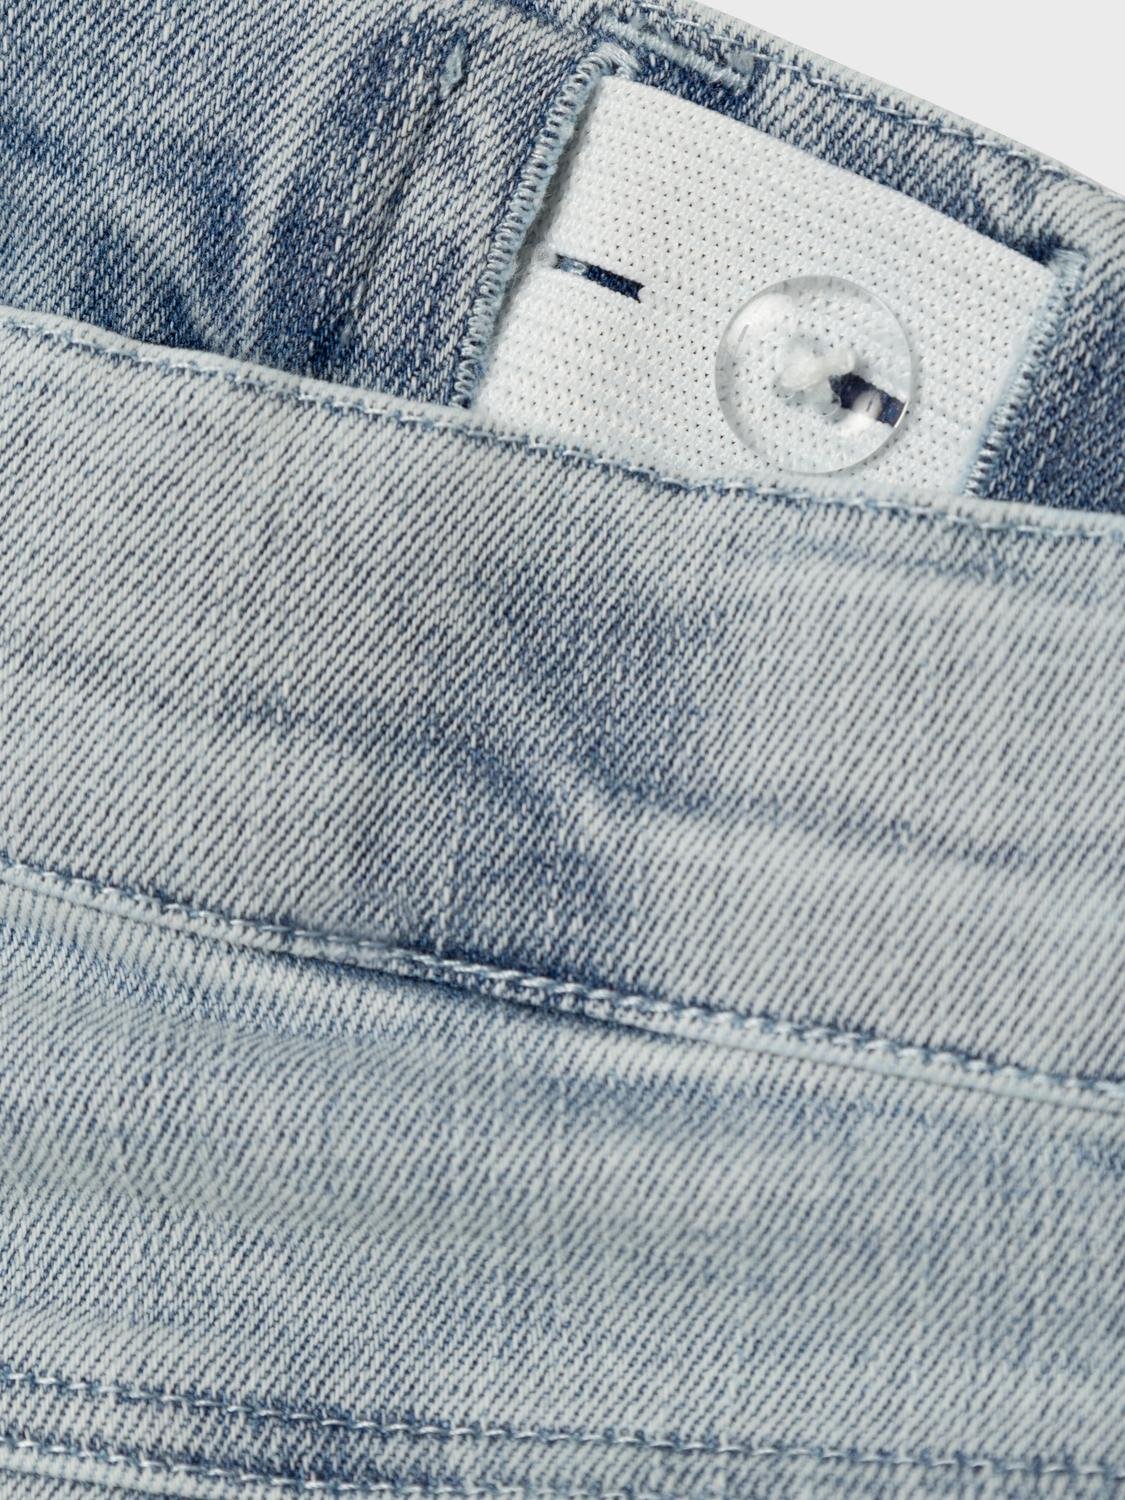 NMMBEN Jeans - Light Blue Denim